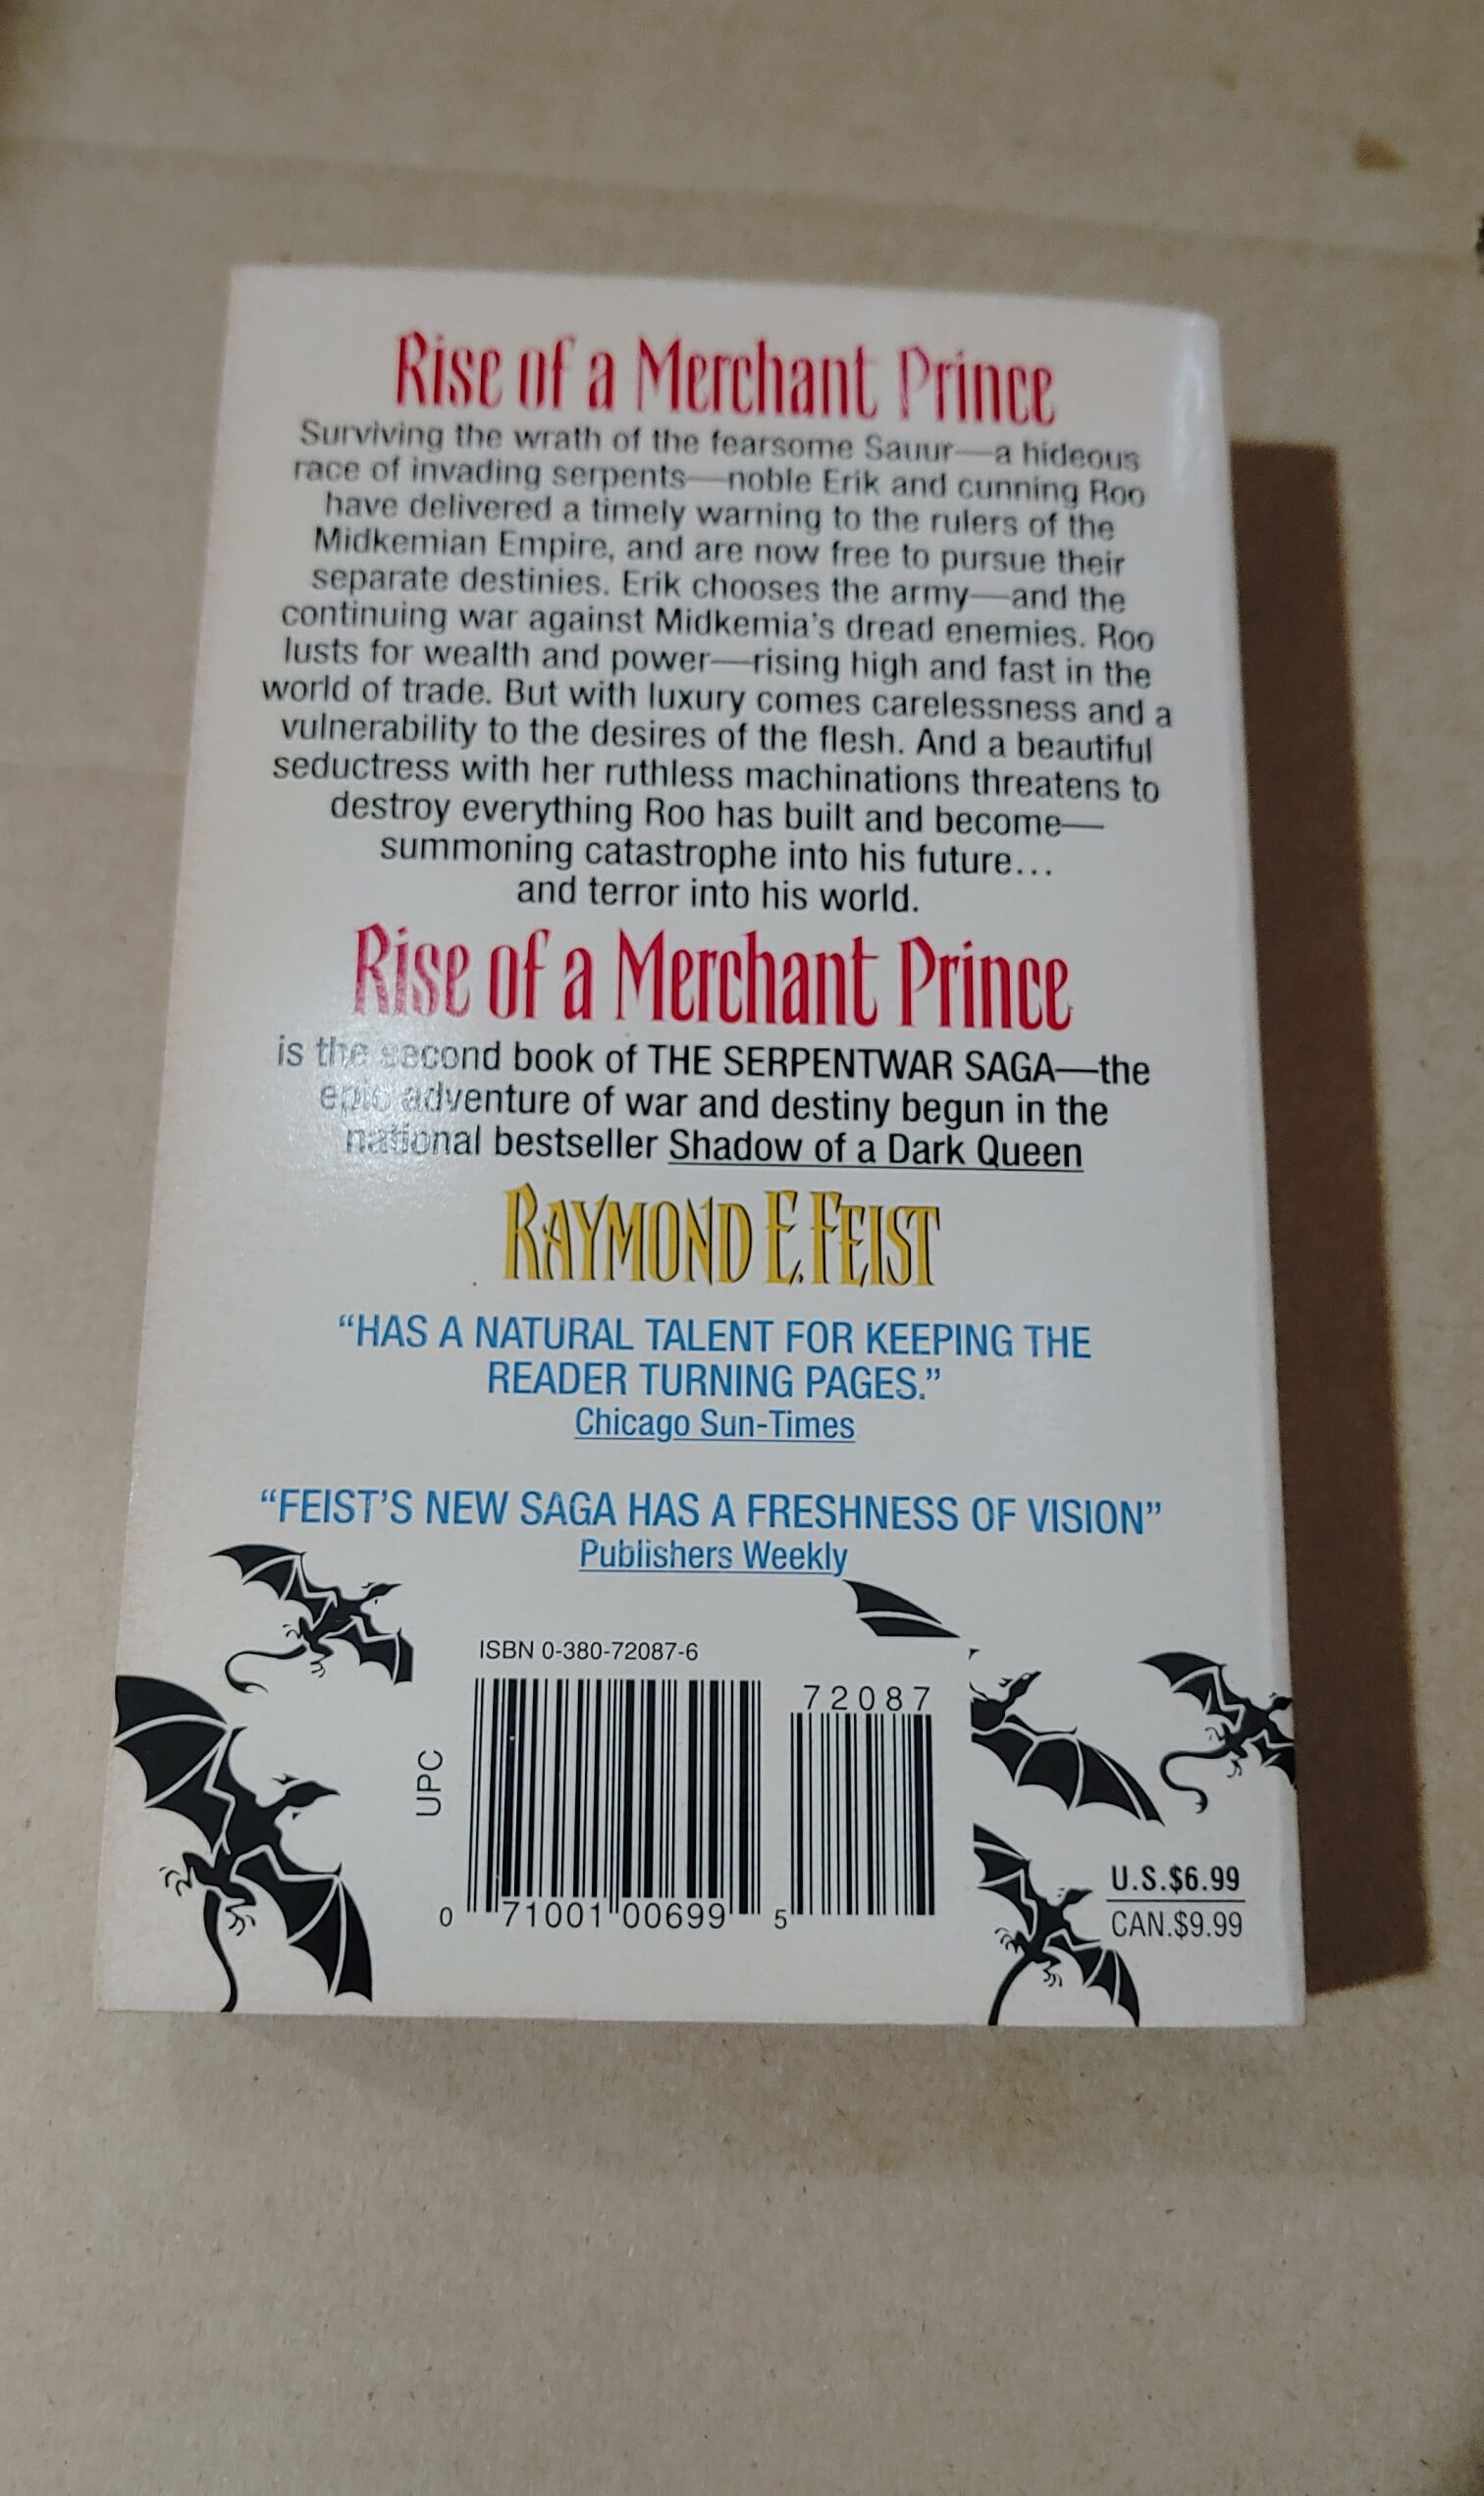 [0380720876/ Raymond E. Feist] Rise of a Merchant Prince Book Two of the Serpentwar Saga